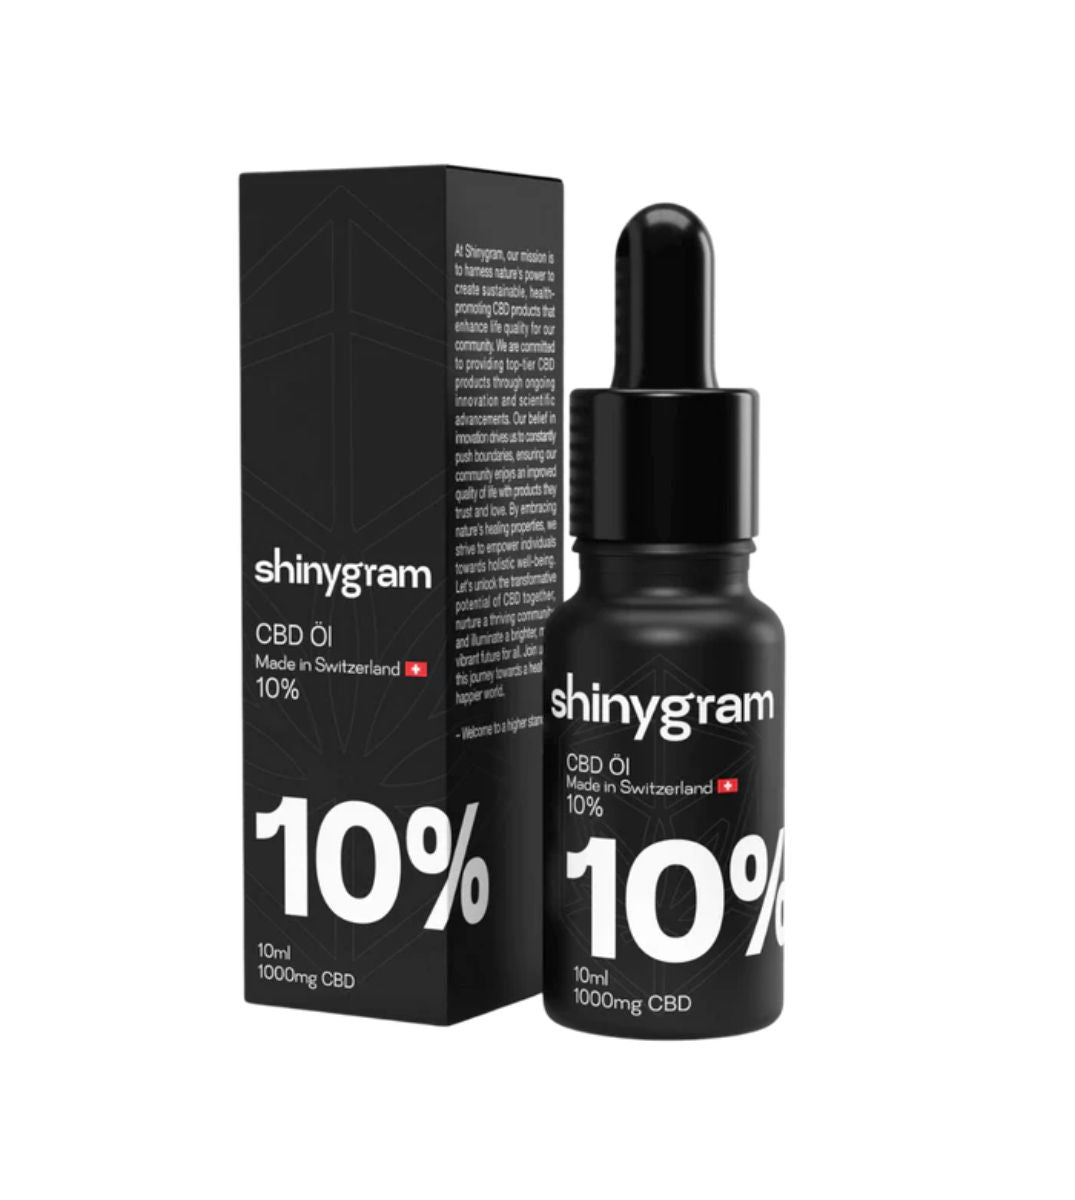 Shinygram CBD Öl 10% - 1000mg, Premiumqualität aus der Schweiz, in einem sicheren Tropffläschchen für optimale Dosierung und natürliche Wohlbefindenförderung.